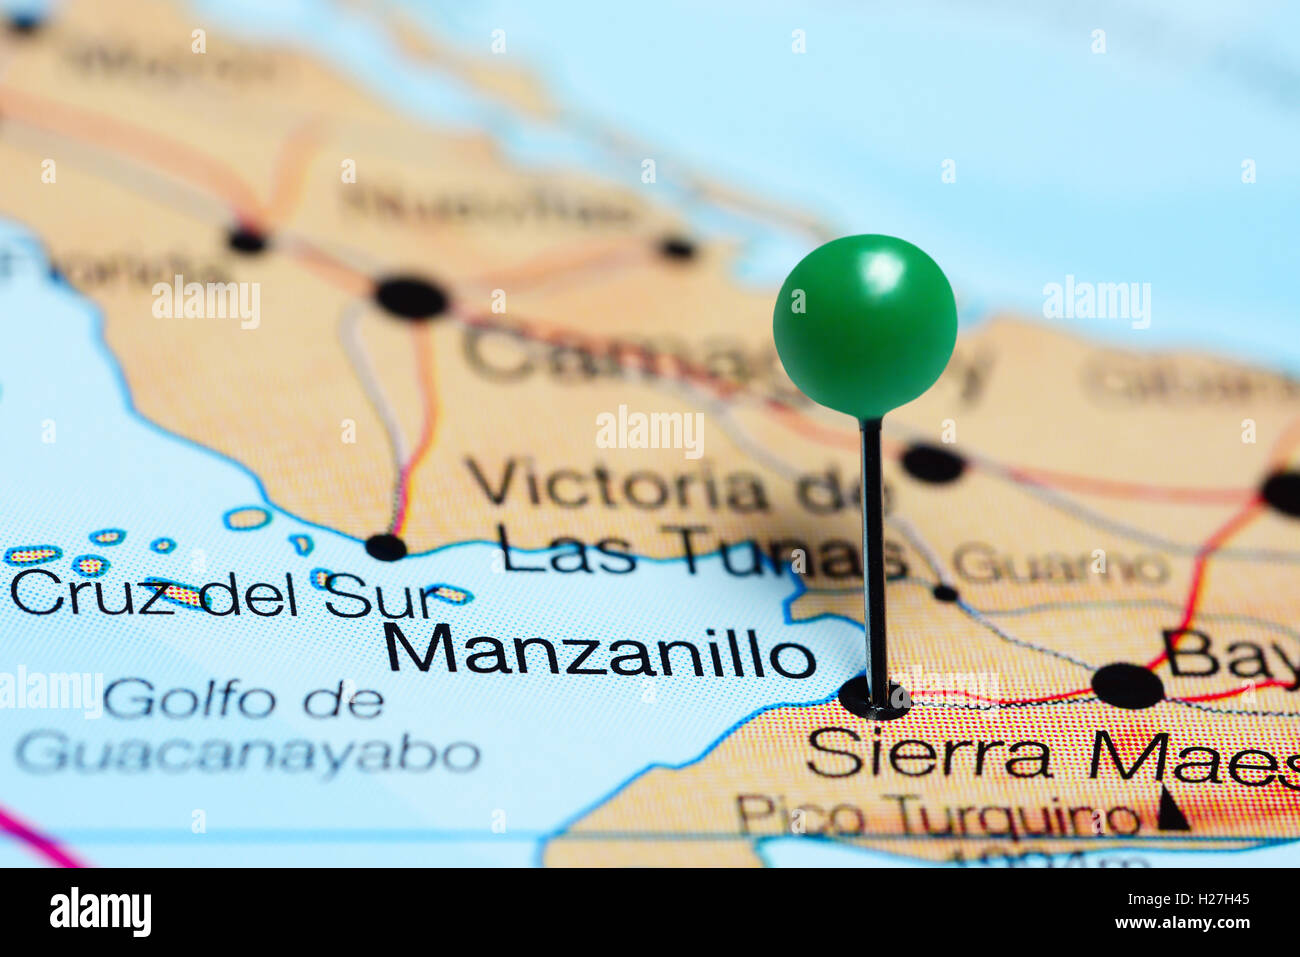 Manzanillo pinned on a map of Cuba Stock Photo